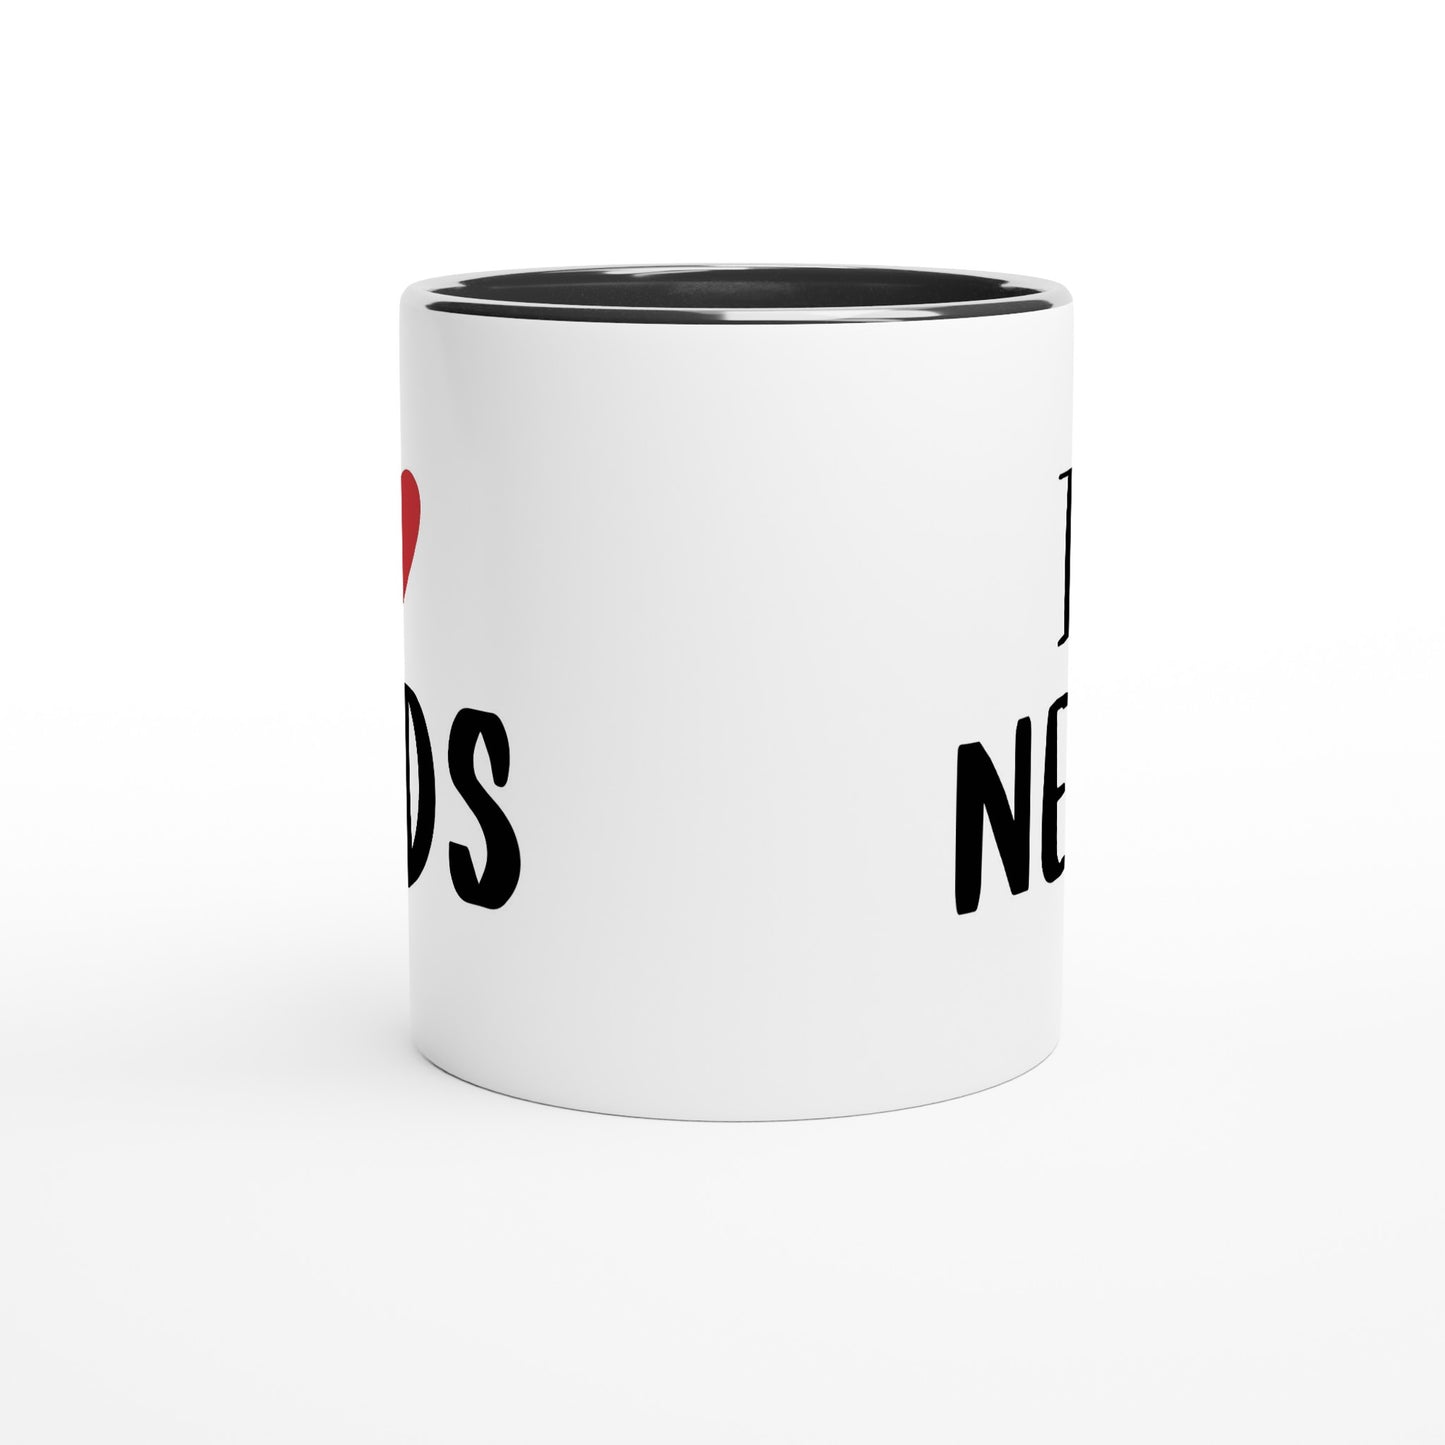 I Love Nerds, Red Heart - White 11oz Ceramic Mug with Colour Inside Colour 11oz Mug Love